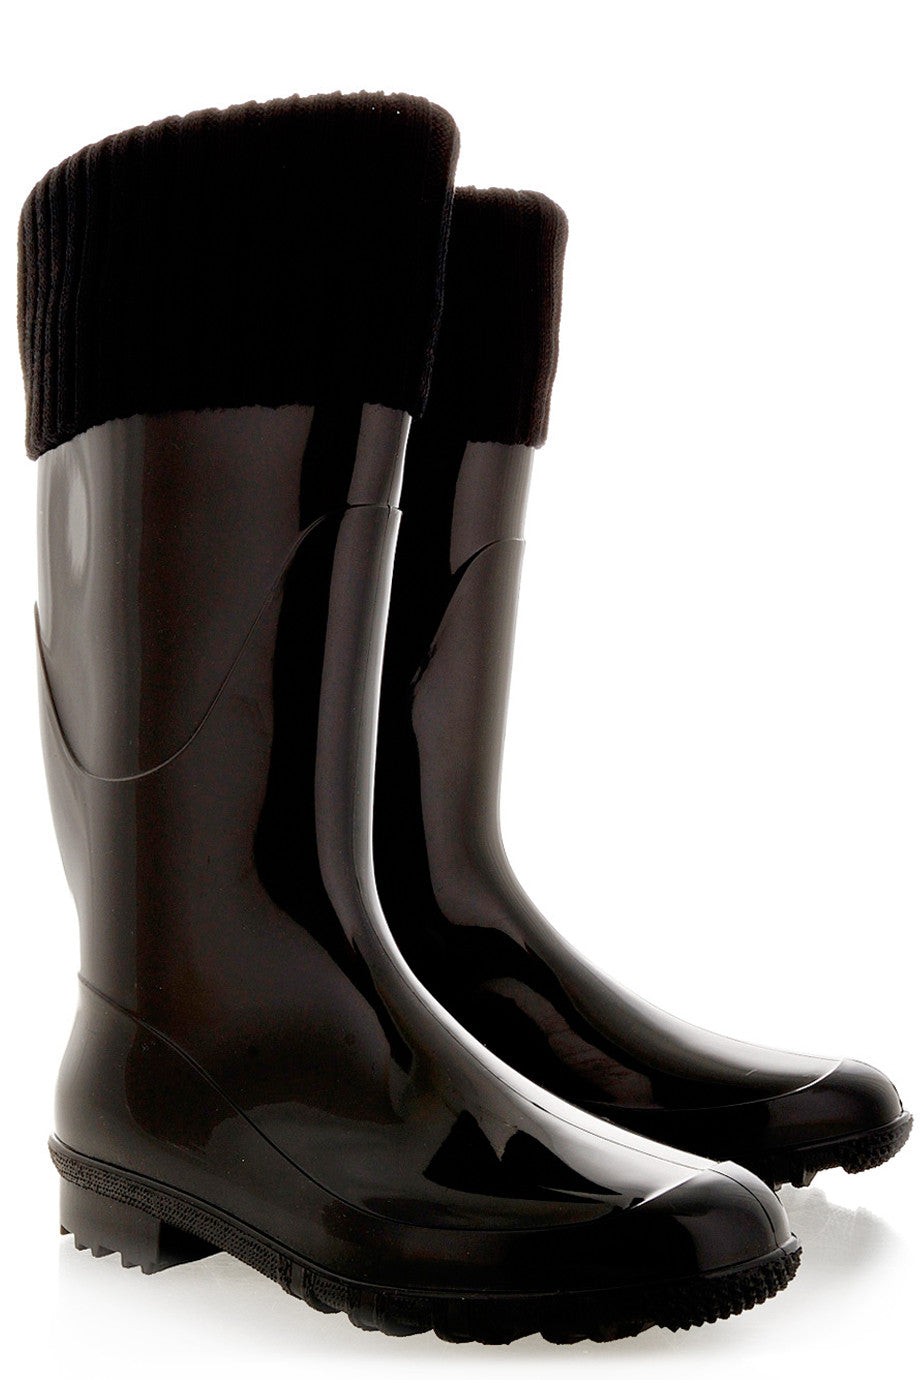 Burberry Rain boots, Women's Shoes